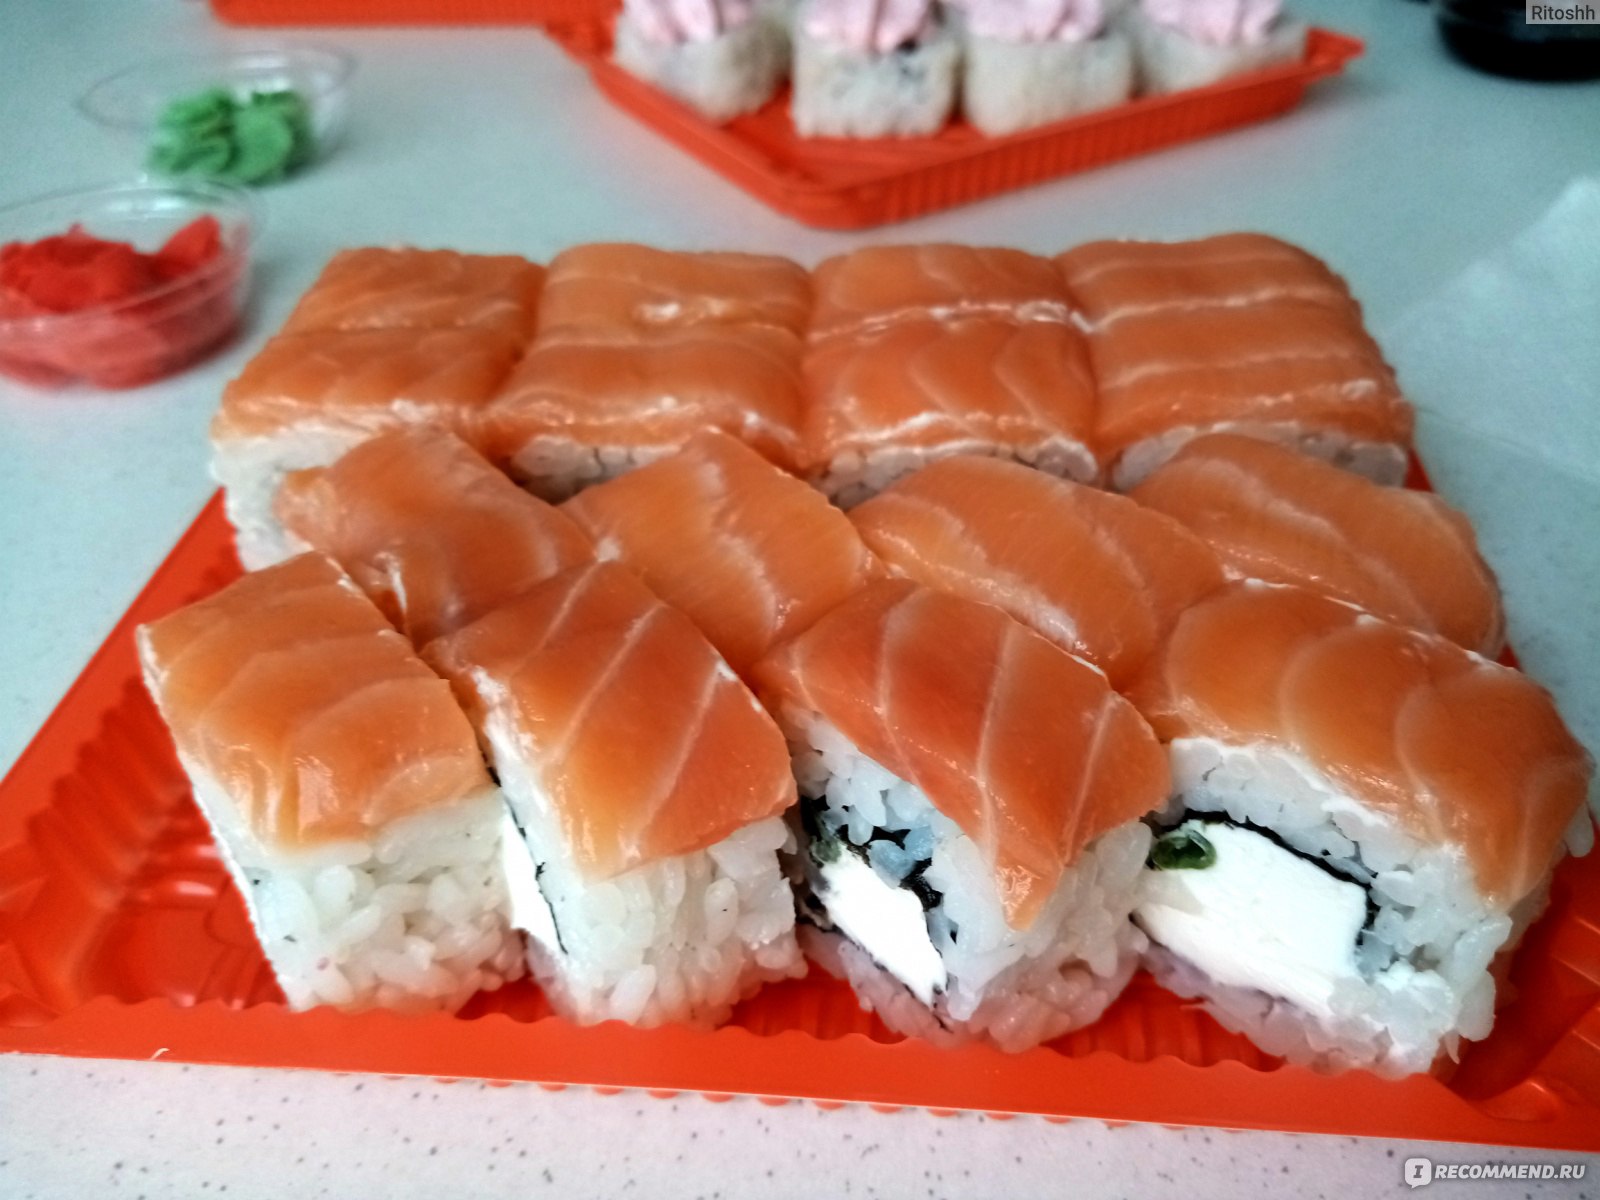 Самые вкусные суши в новосибирске отзывы фото 108